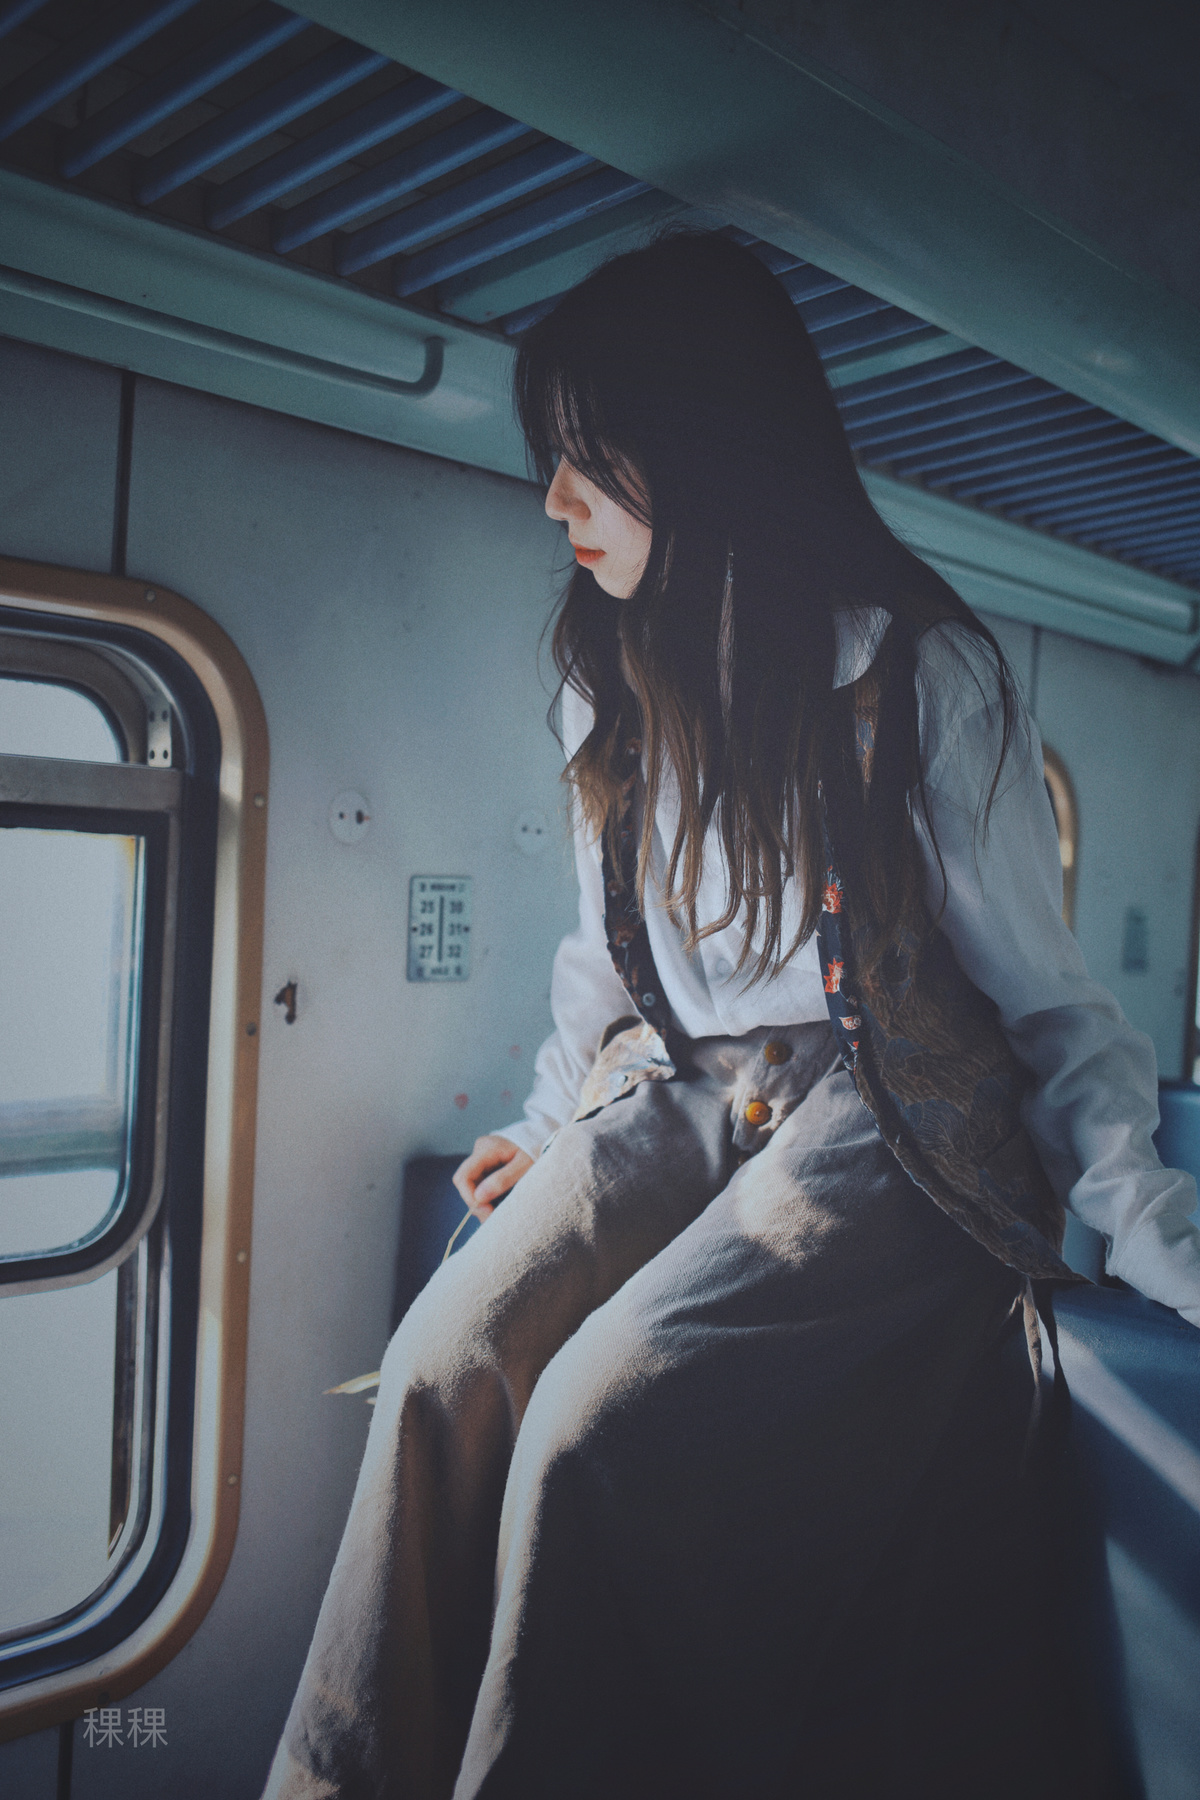 一个坐在地铁上看着窗外的年轻女子